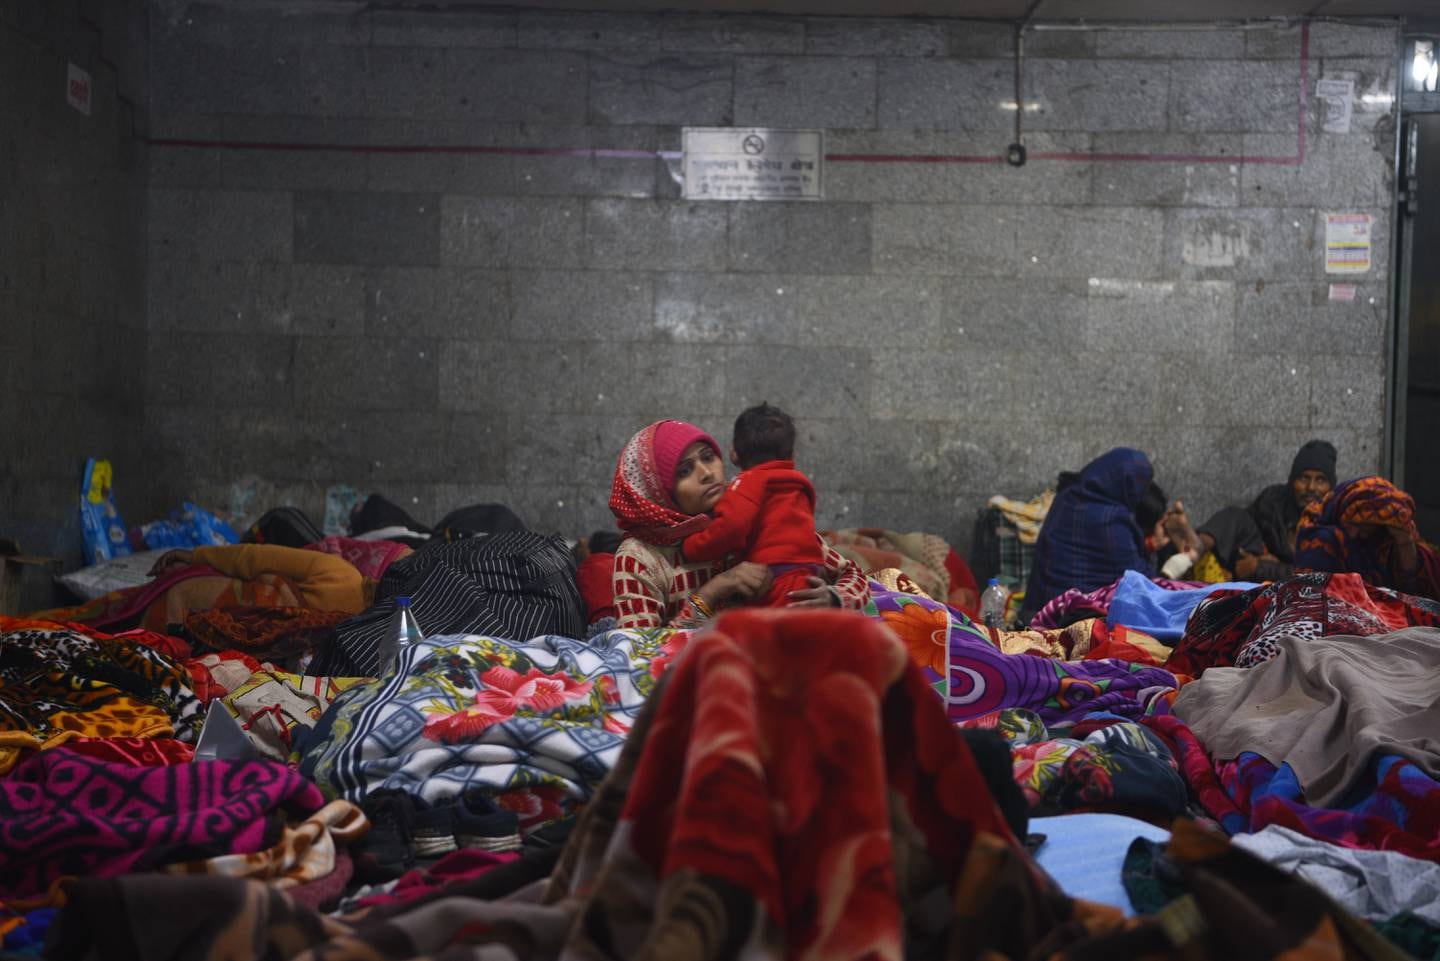 Des dizaines de personnes à New Delhi dorment sur les trottoirs, dans les arrêts de bus et les métros piétons.  Photo: Taniya Dutta / The National